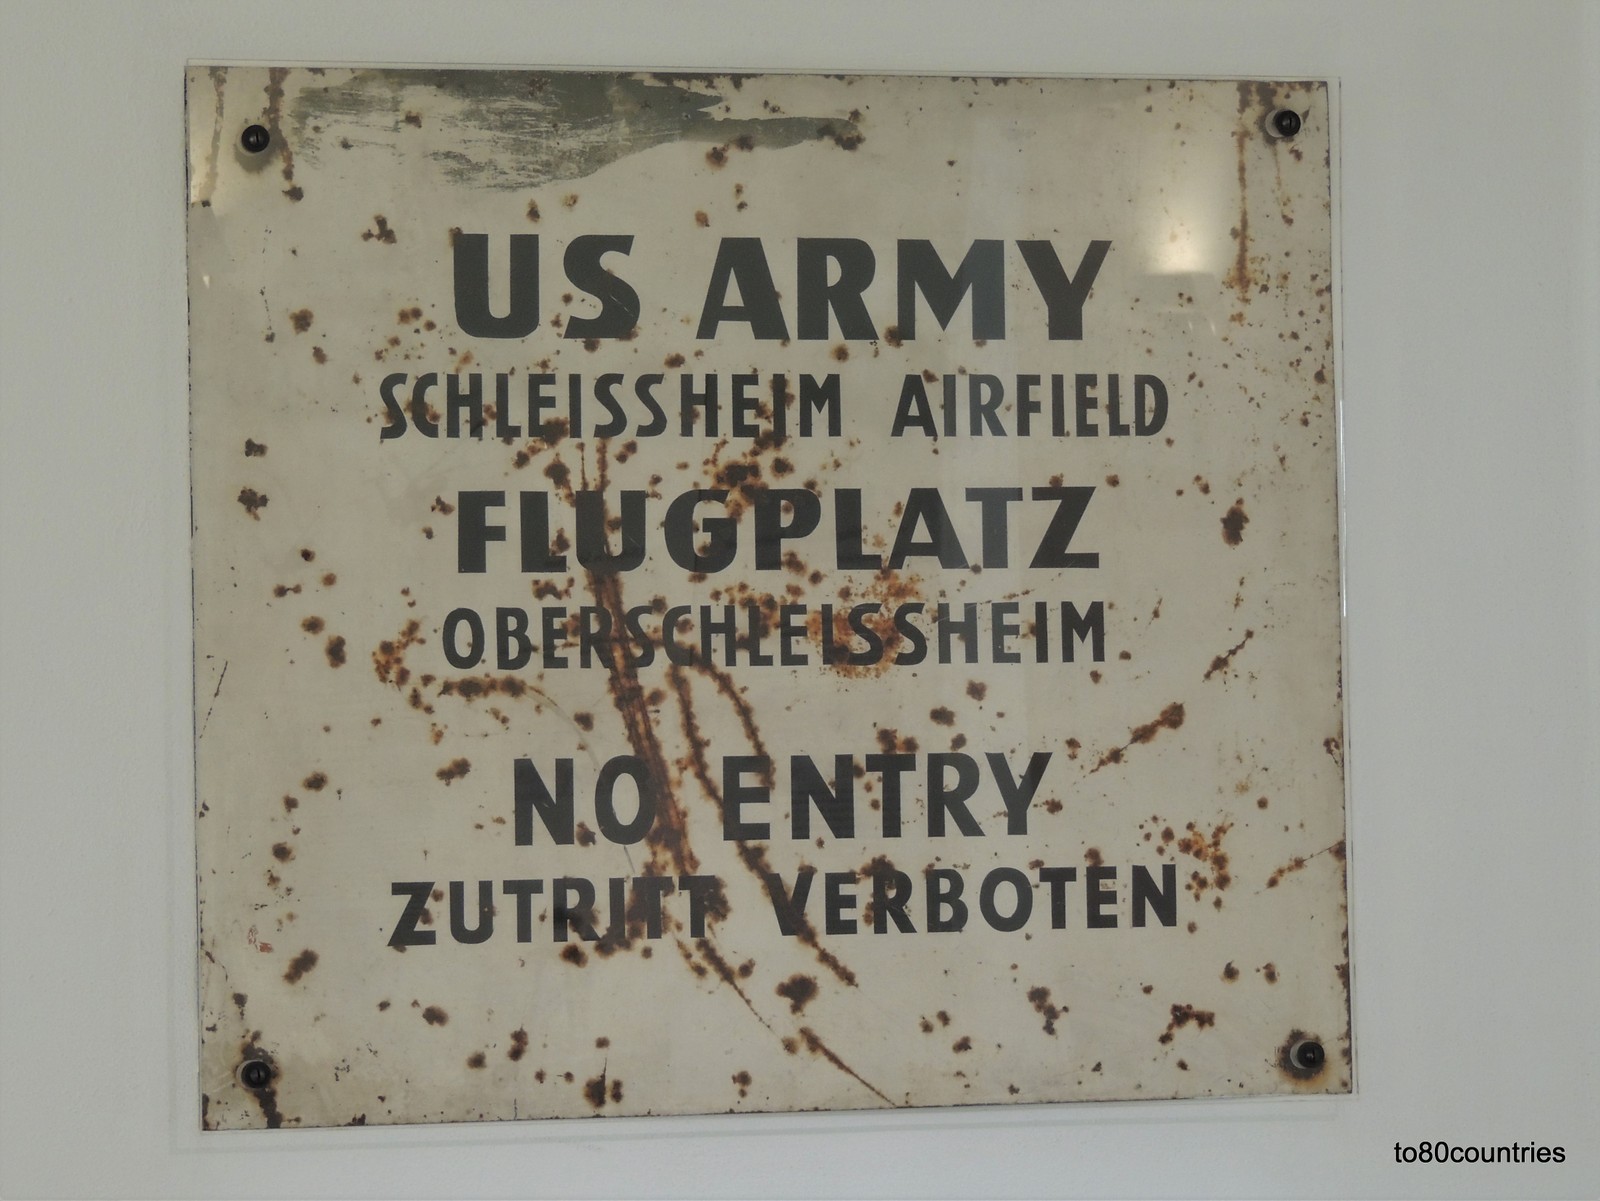 US Army Schleissheim Airfield